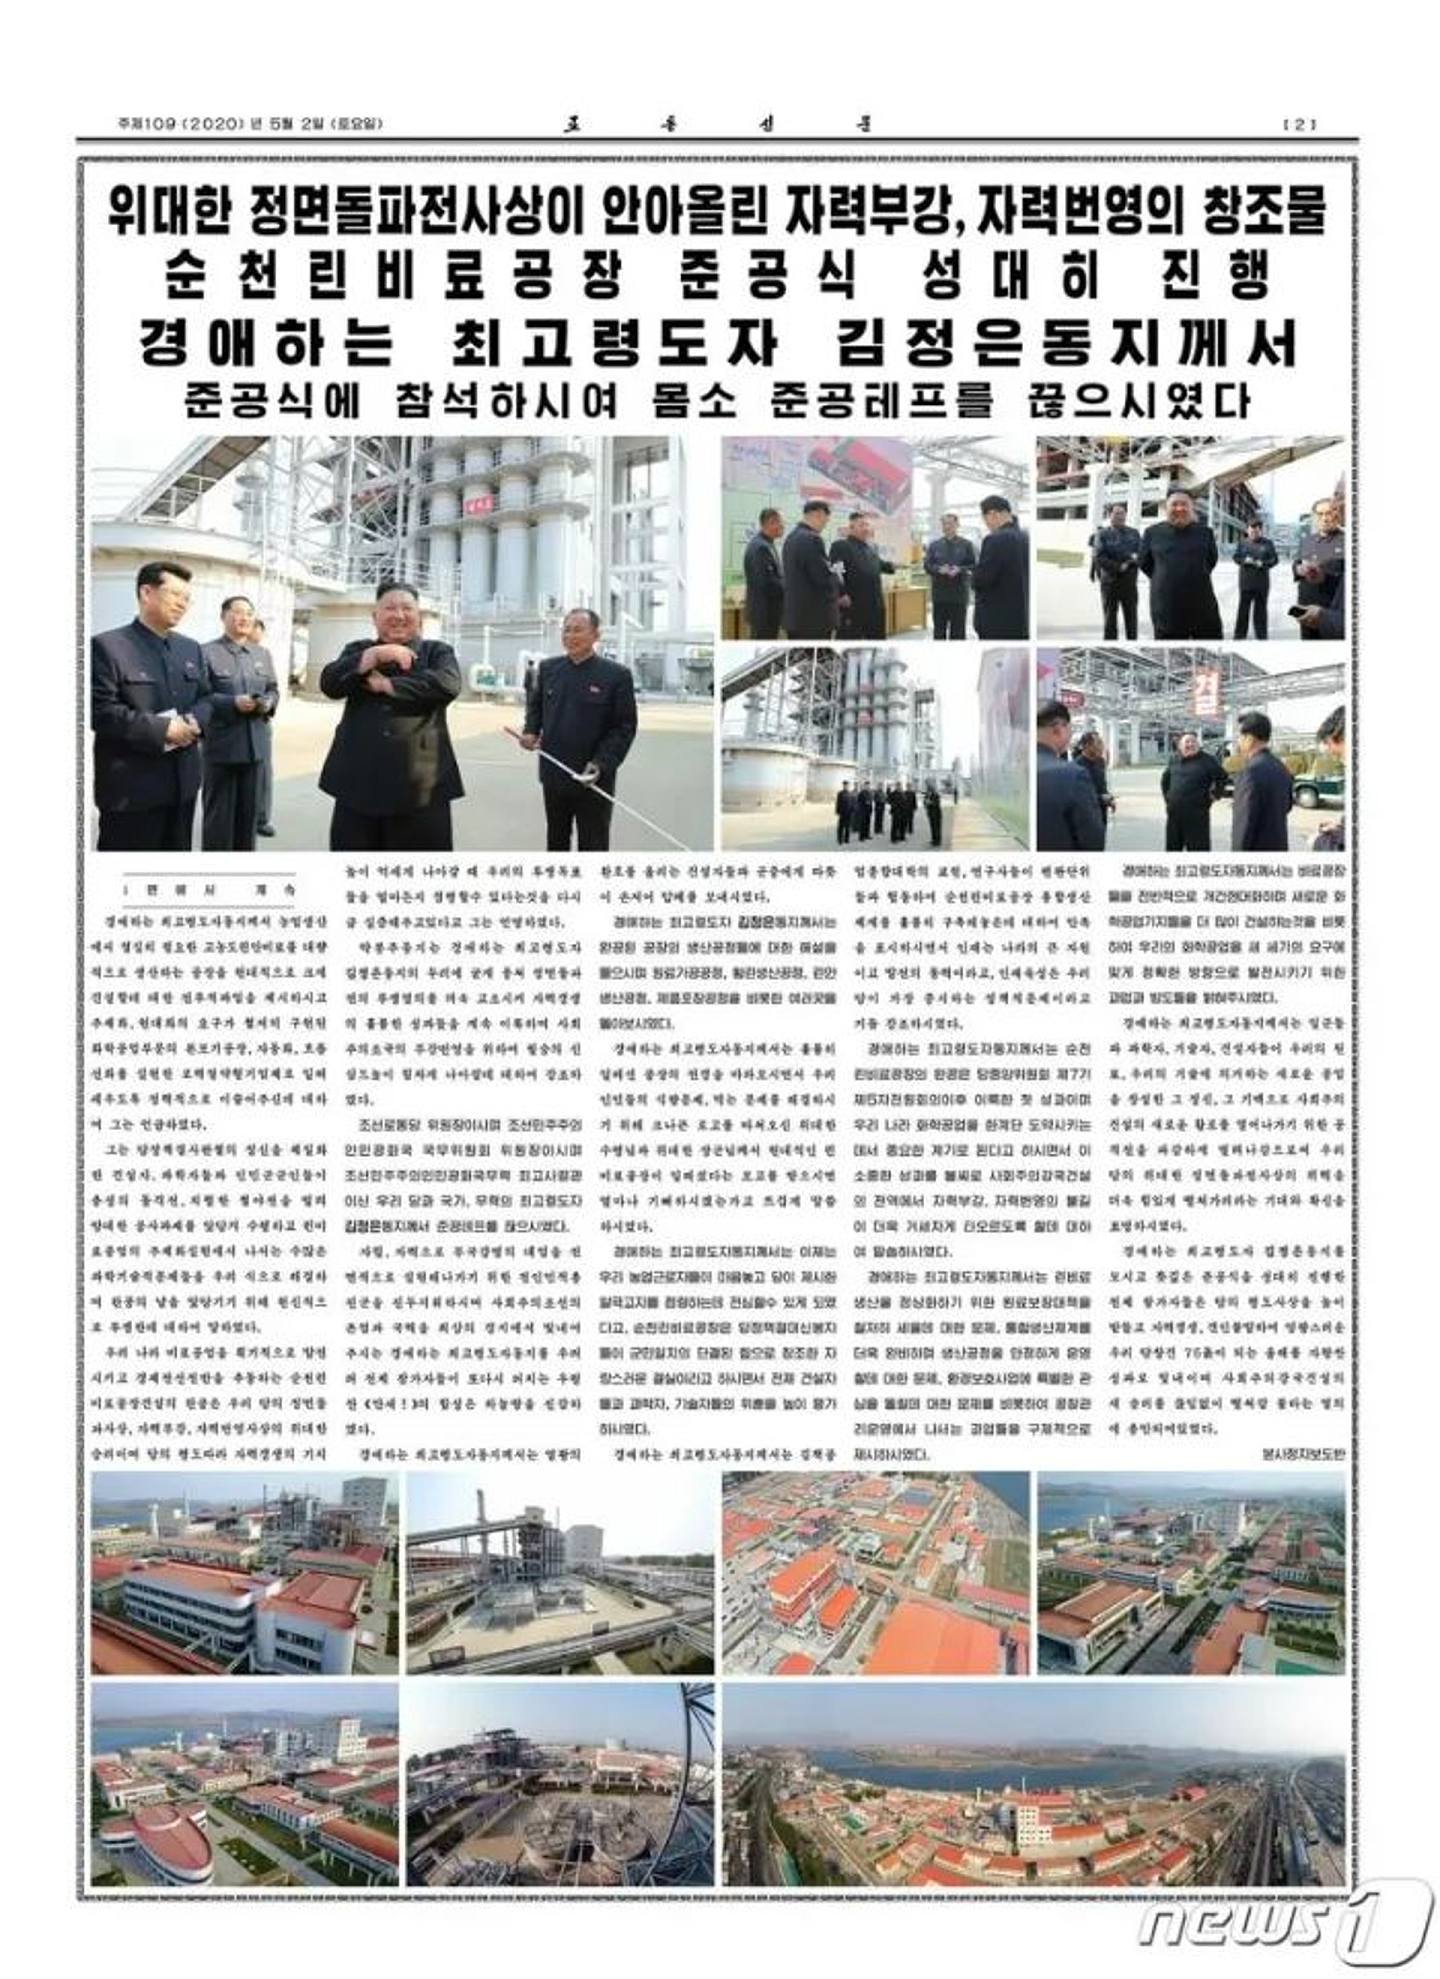 《朝鲜日报》刊出金正恩到新肥料厂剪彩的照片。 (《朝鲜日报》)